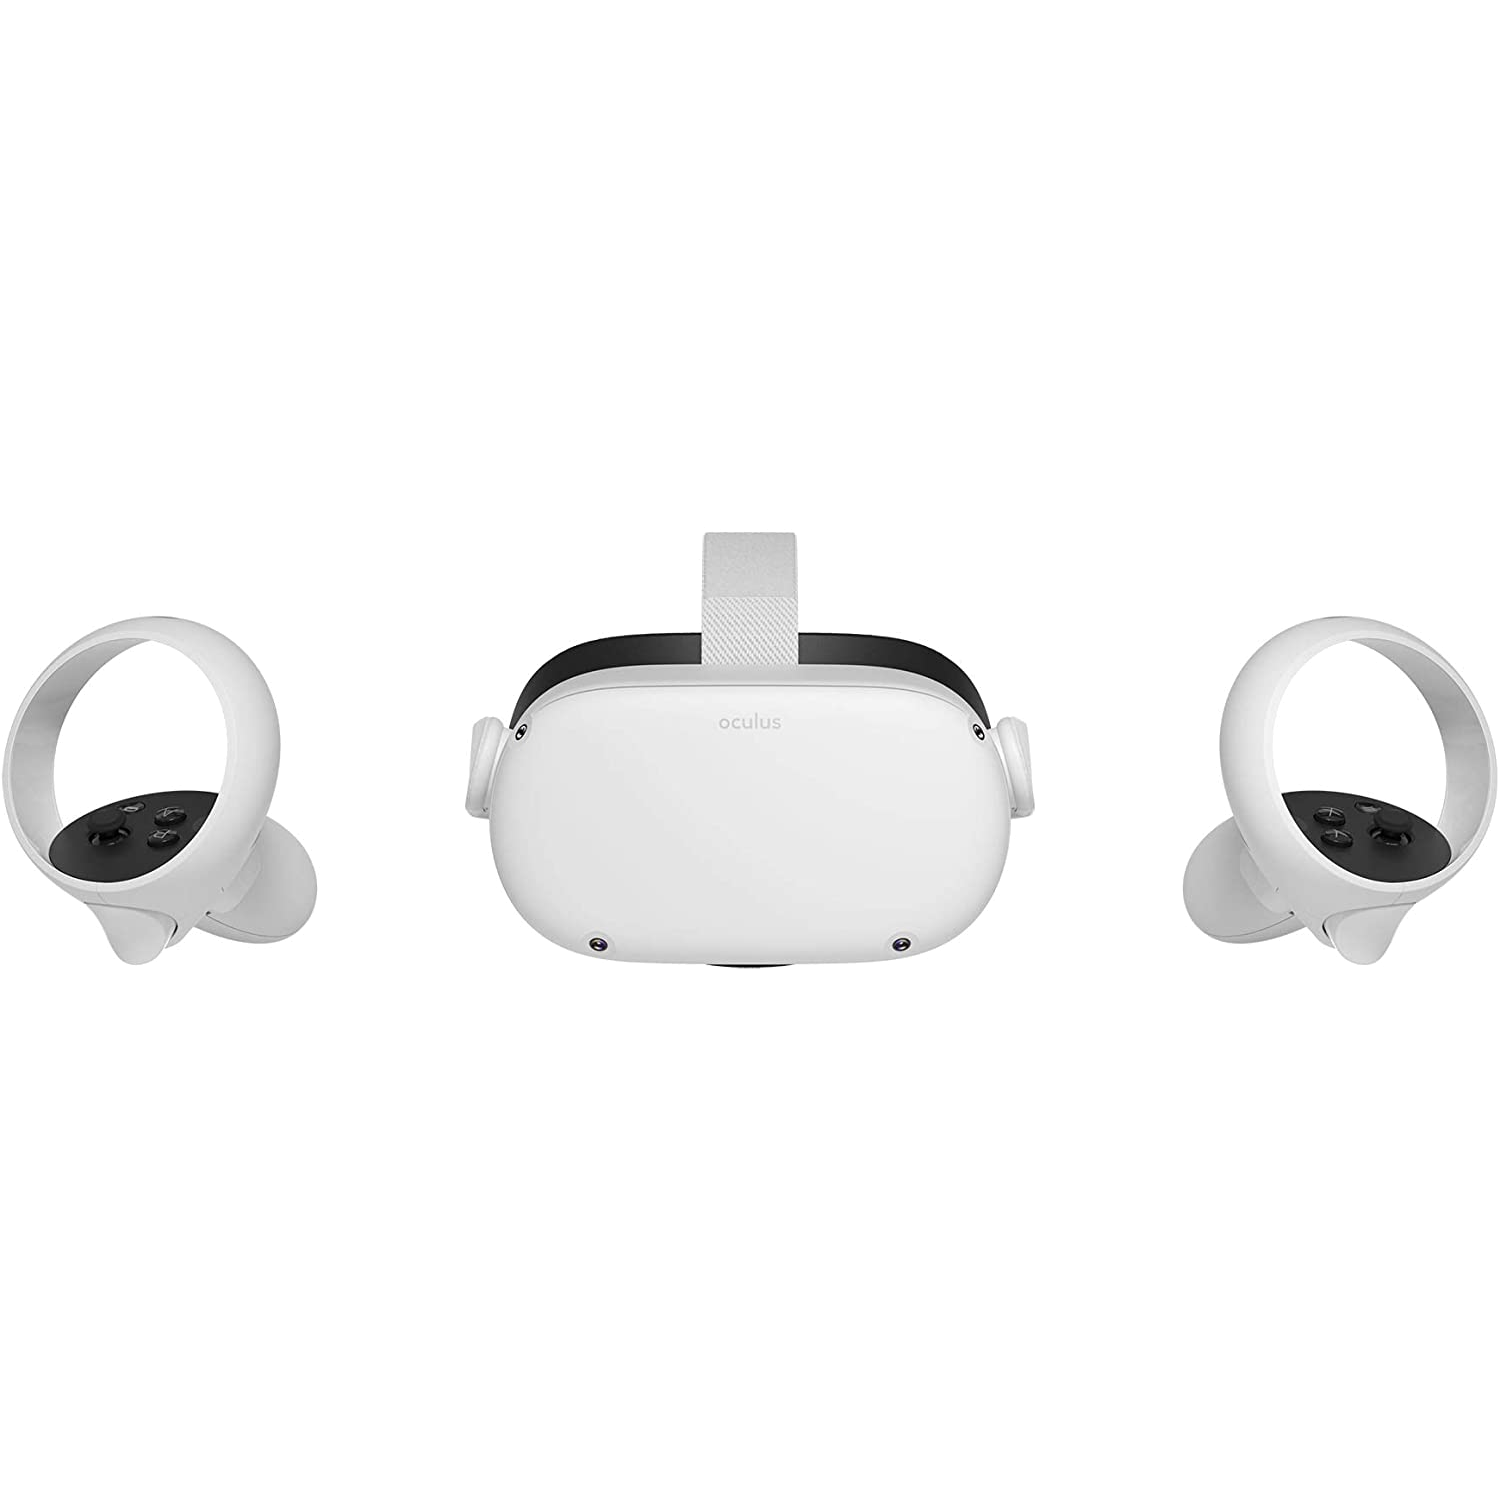 Meta Quest 2 gafas de realidad virtual avanzada todo en uno 256 gb facebook oculus quest2 360º 256gb